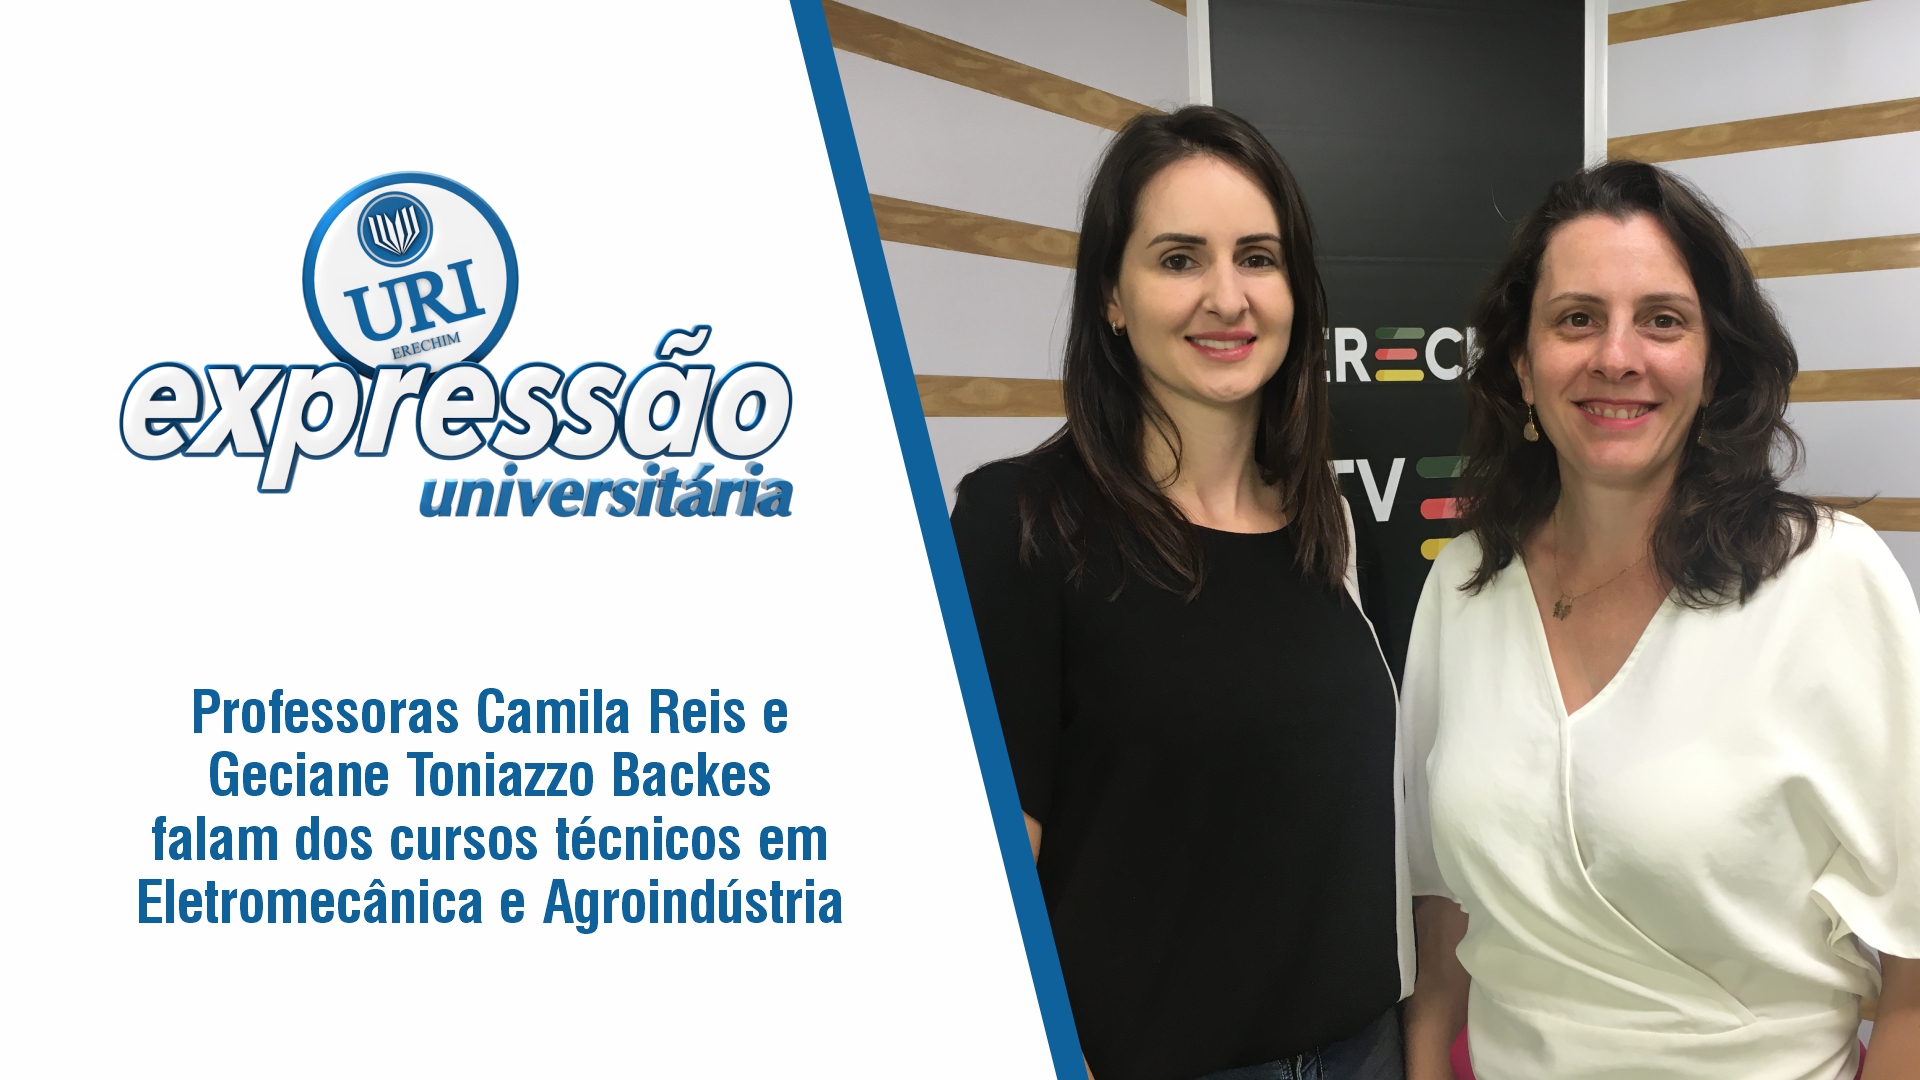 Professoras Camila Reis e Geciane Toniazzo Backes falam dos cursos técnicos em Eletromecânica e Agroindústria.